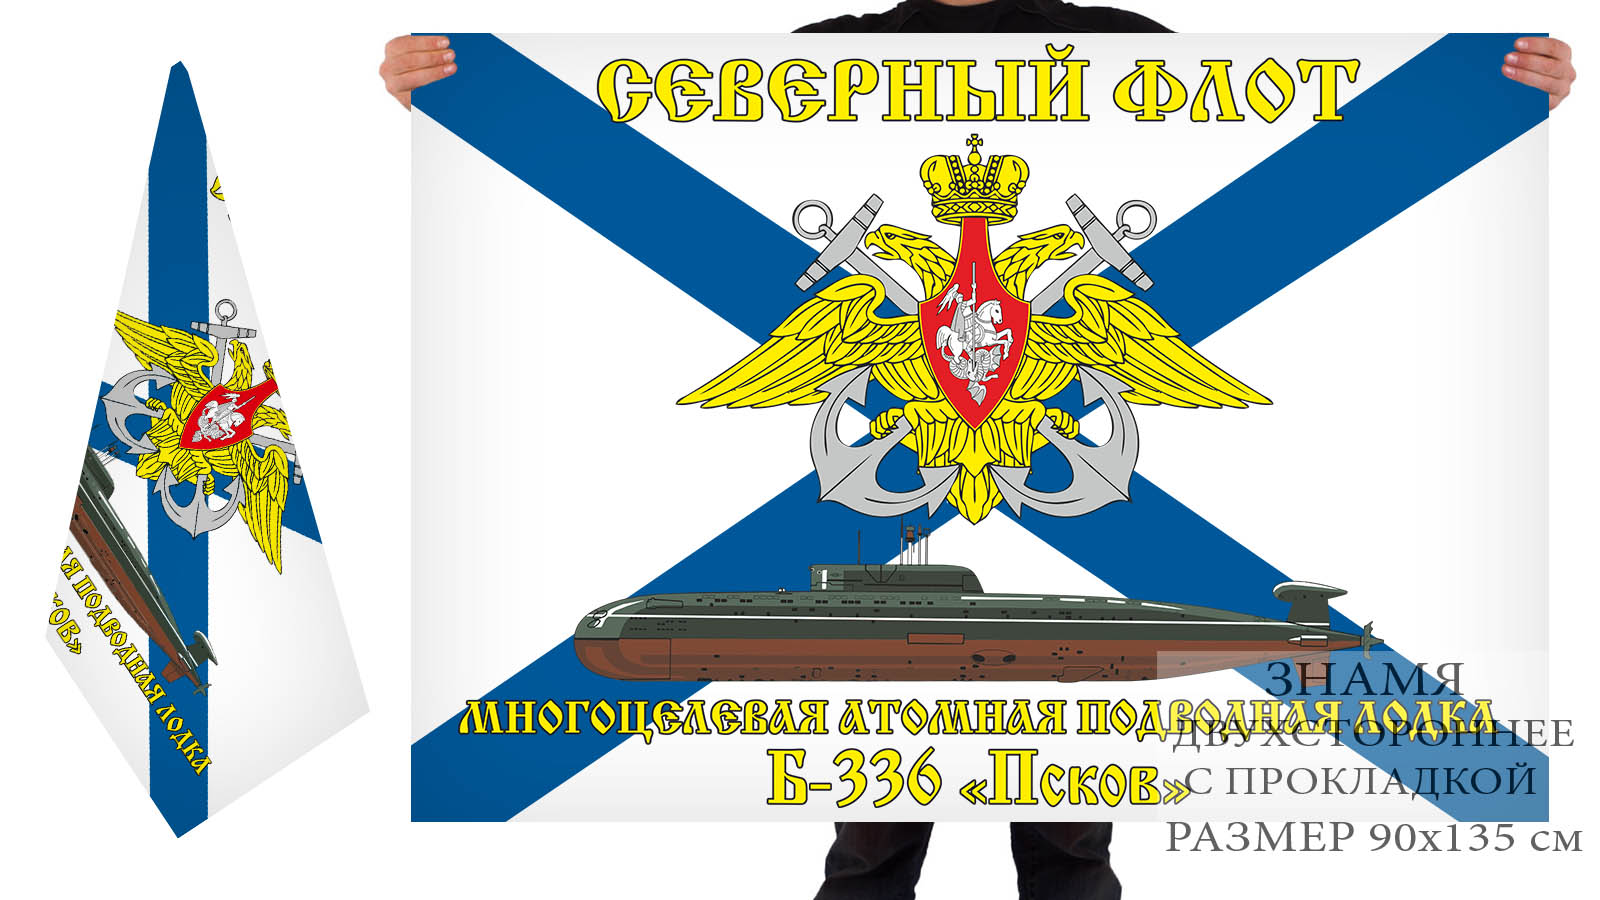 Двусторонний флаг многоцелевой атомной подлодки Б-336 "Псков"